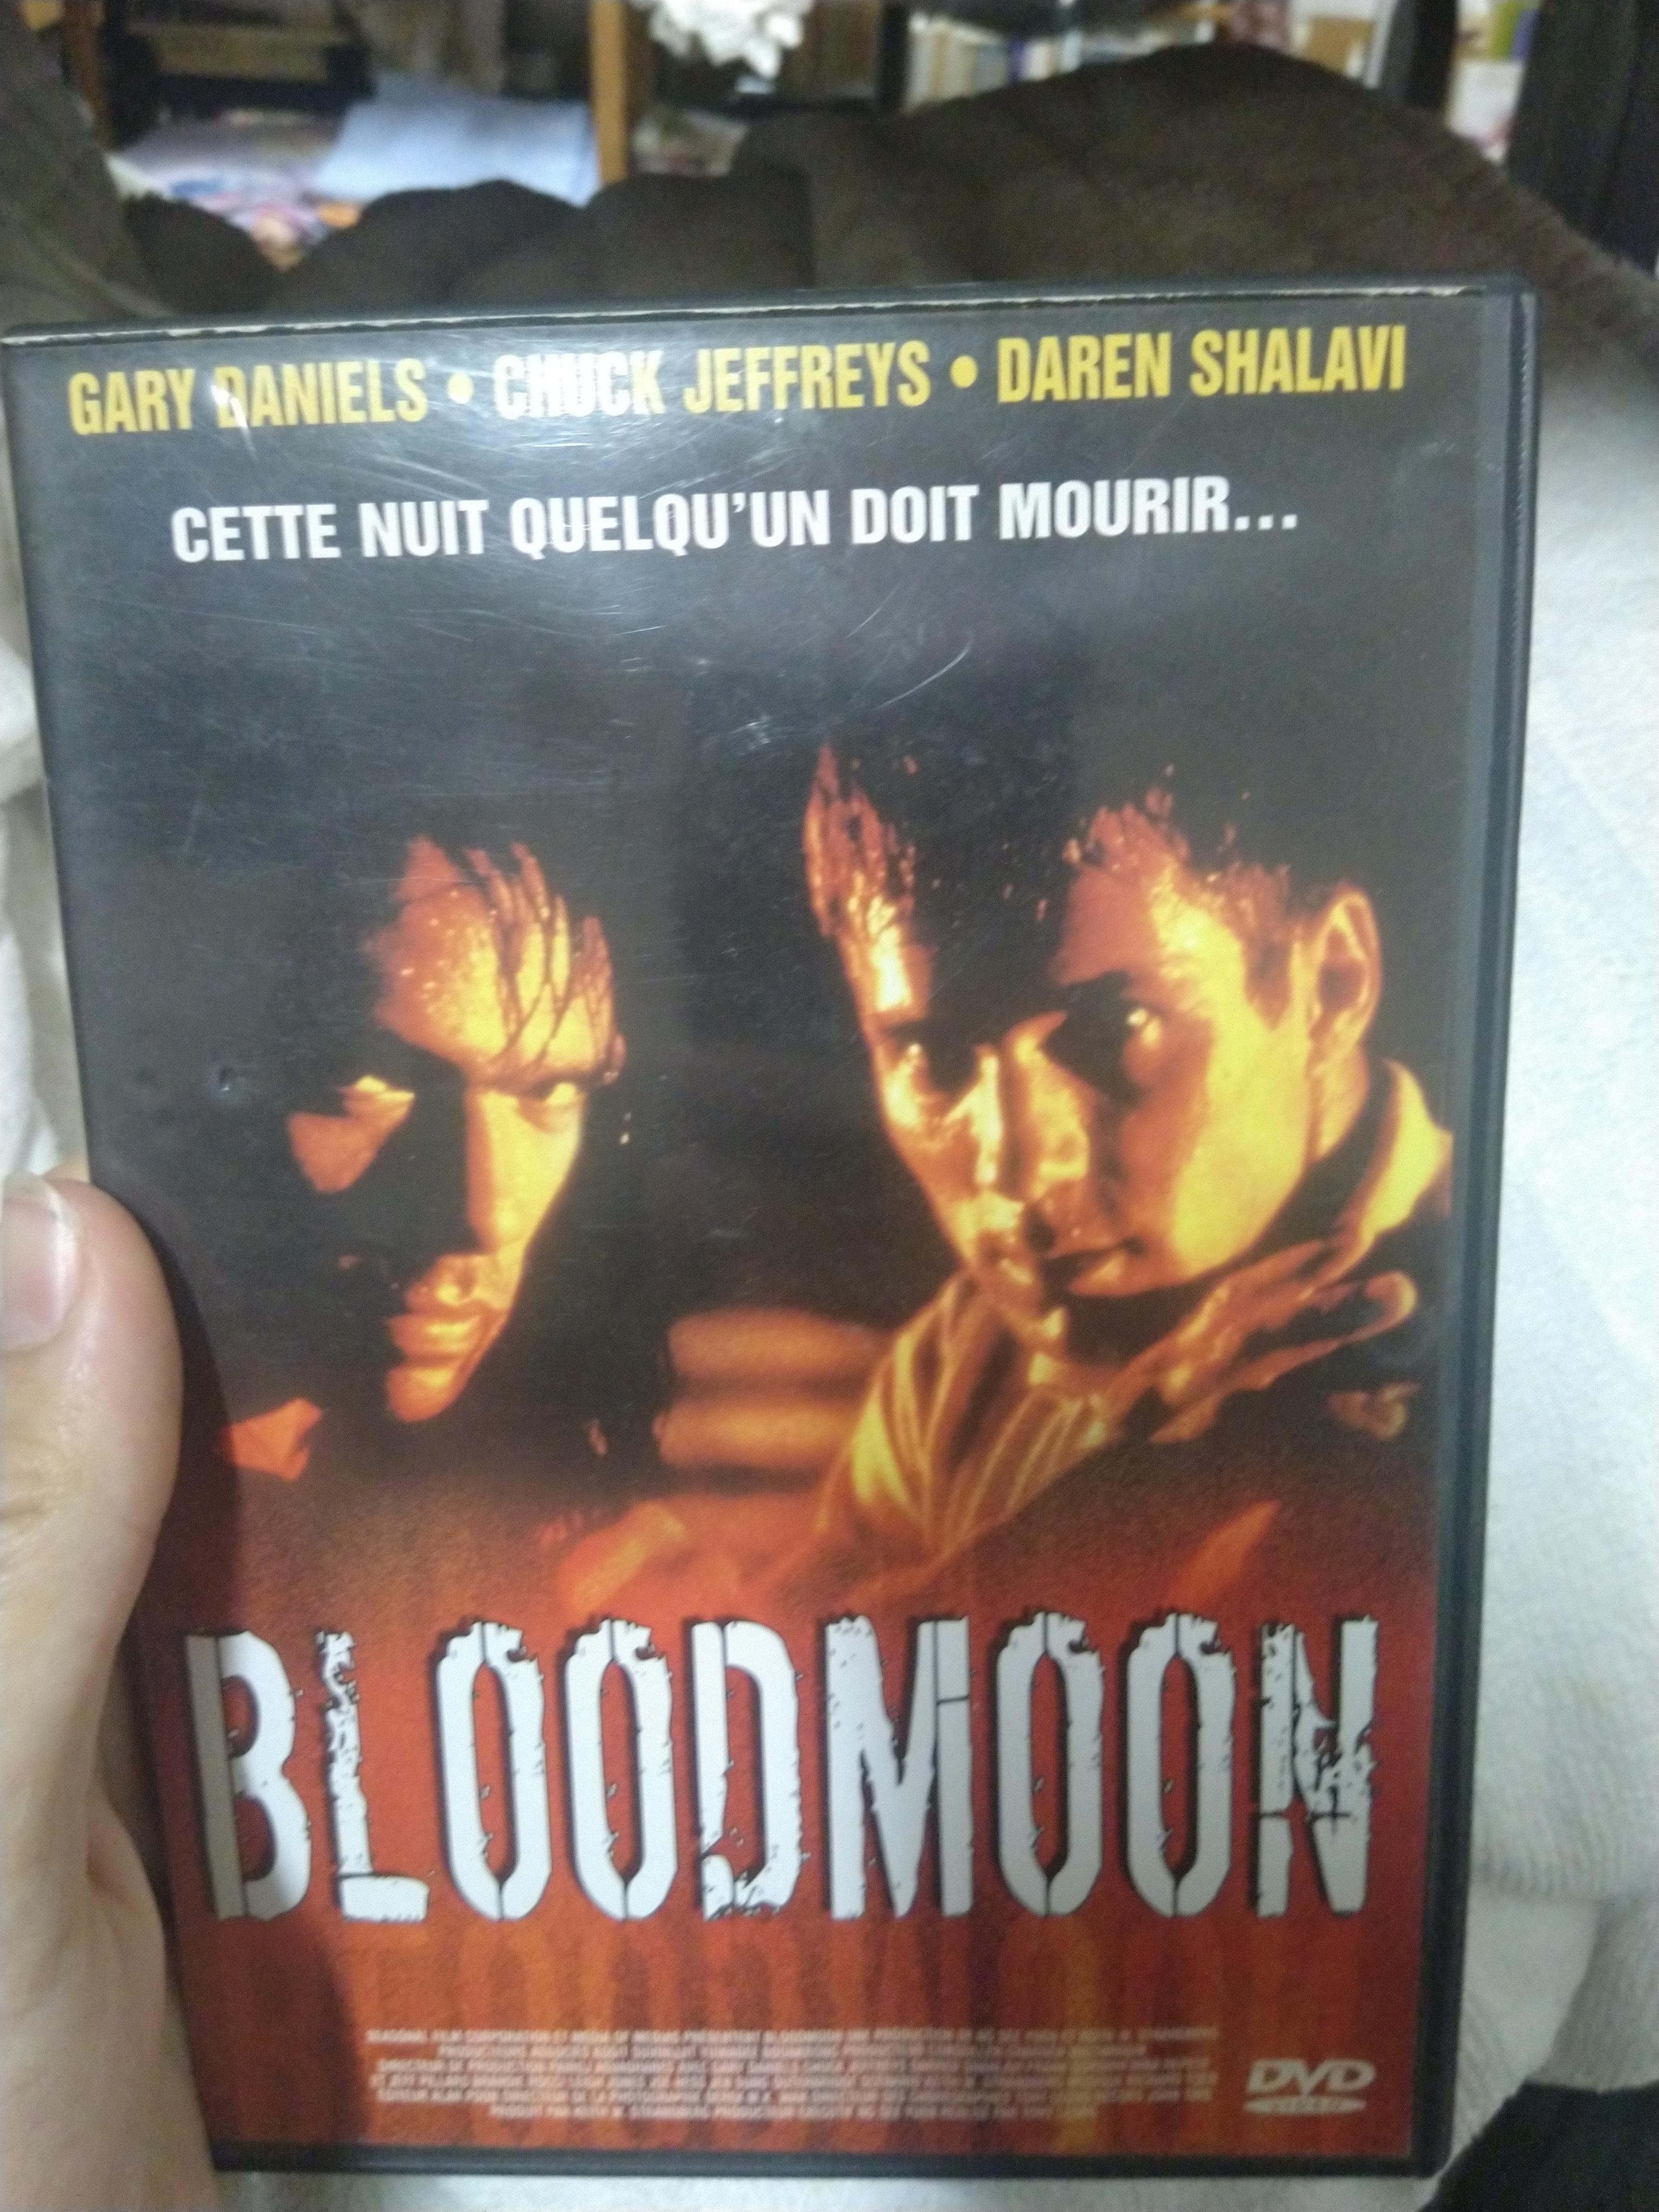 troc de troc dvd - bloodmoon image 0